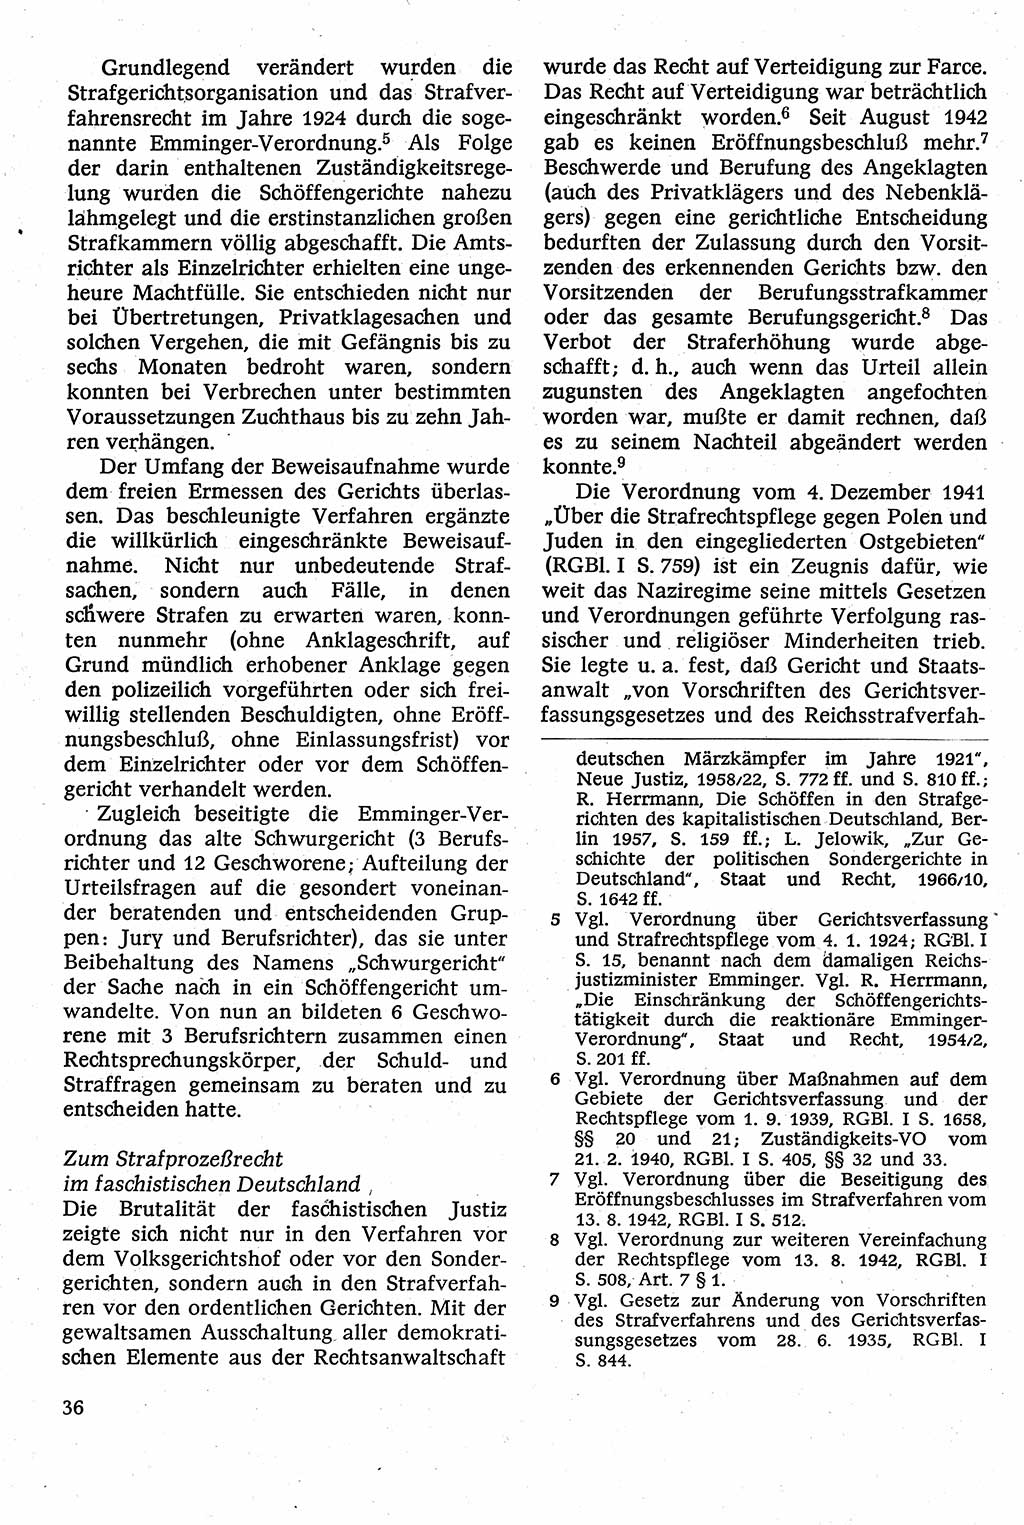 Strafverfahrensrecht [Deutsche Demokratische Republik (DDR)], Lehrbuch 1982, Seite 36 (Strafverf.-R. DDR Lb. 1982, S. 36)